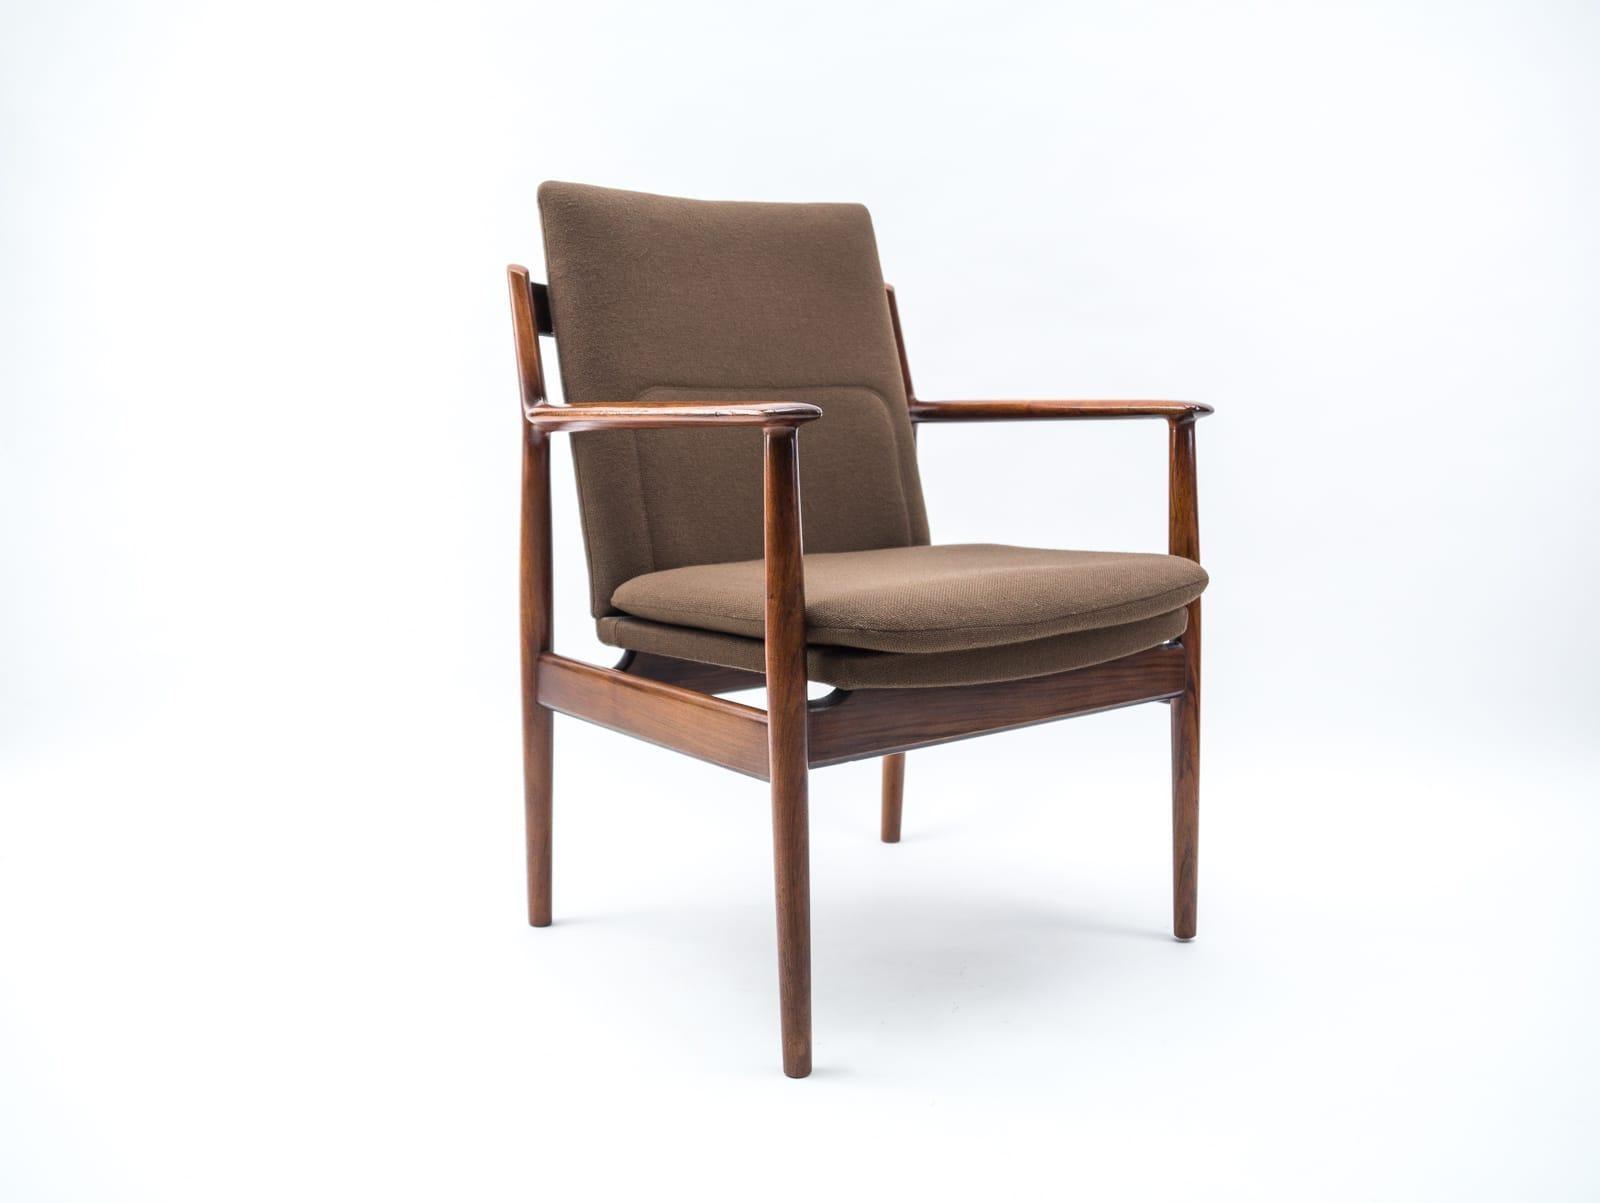 Danish Mid Century Teak Armrest Dining Chair, Model 431 by Arne Vodder, Sibast For Sale 6